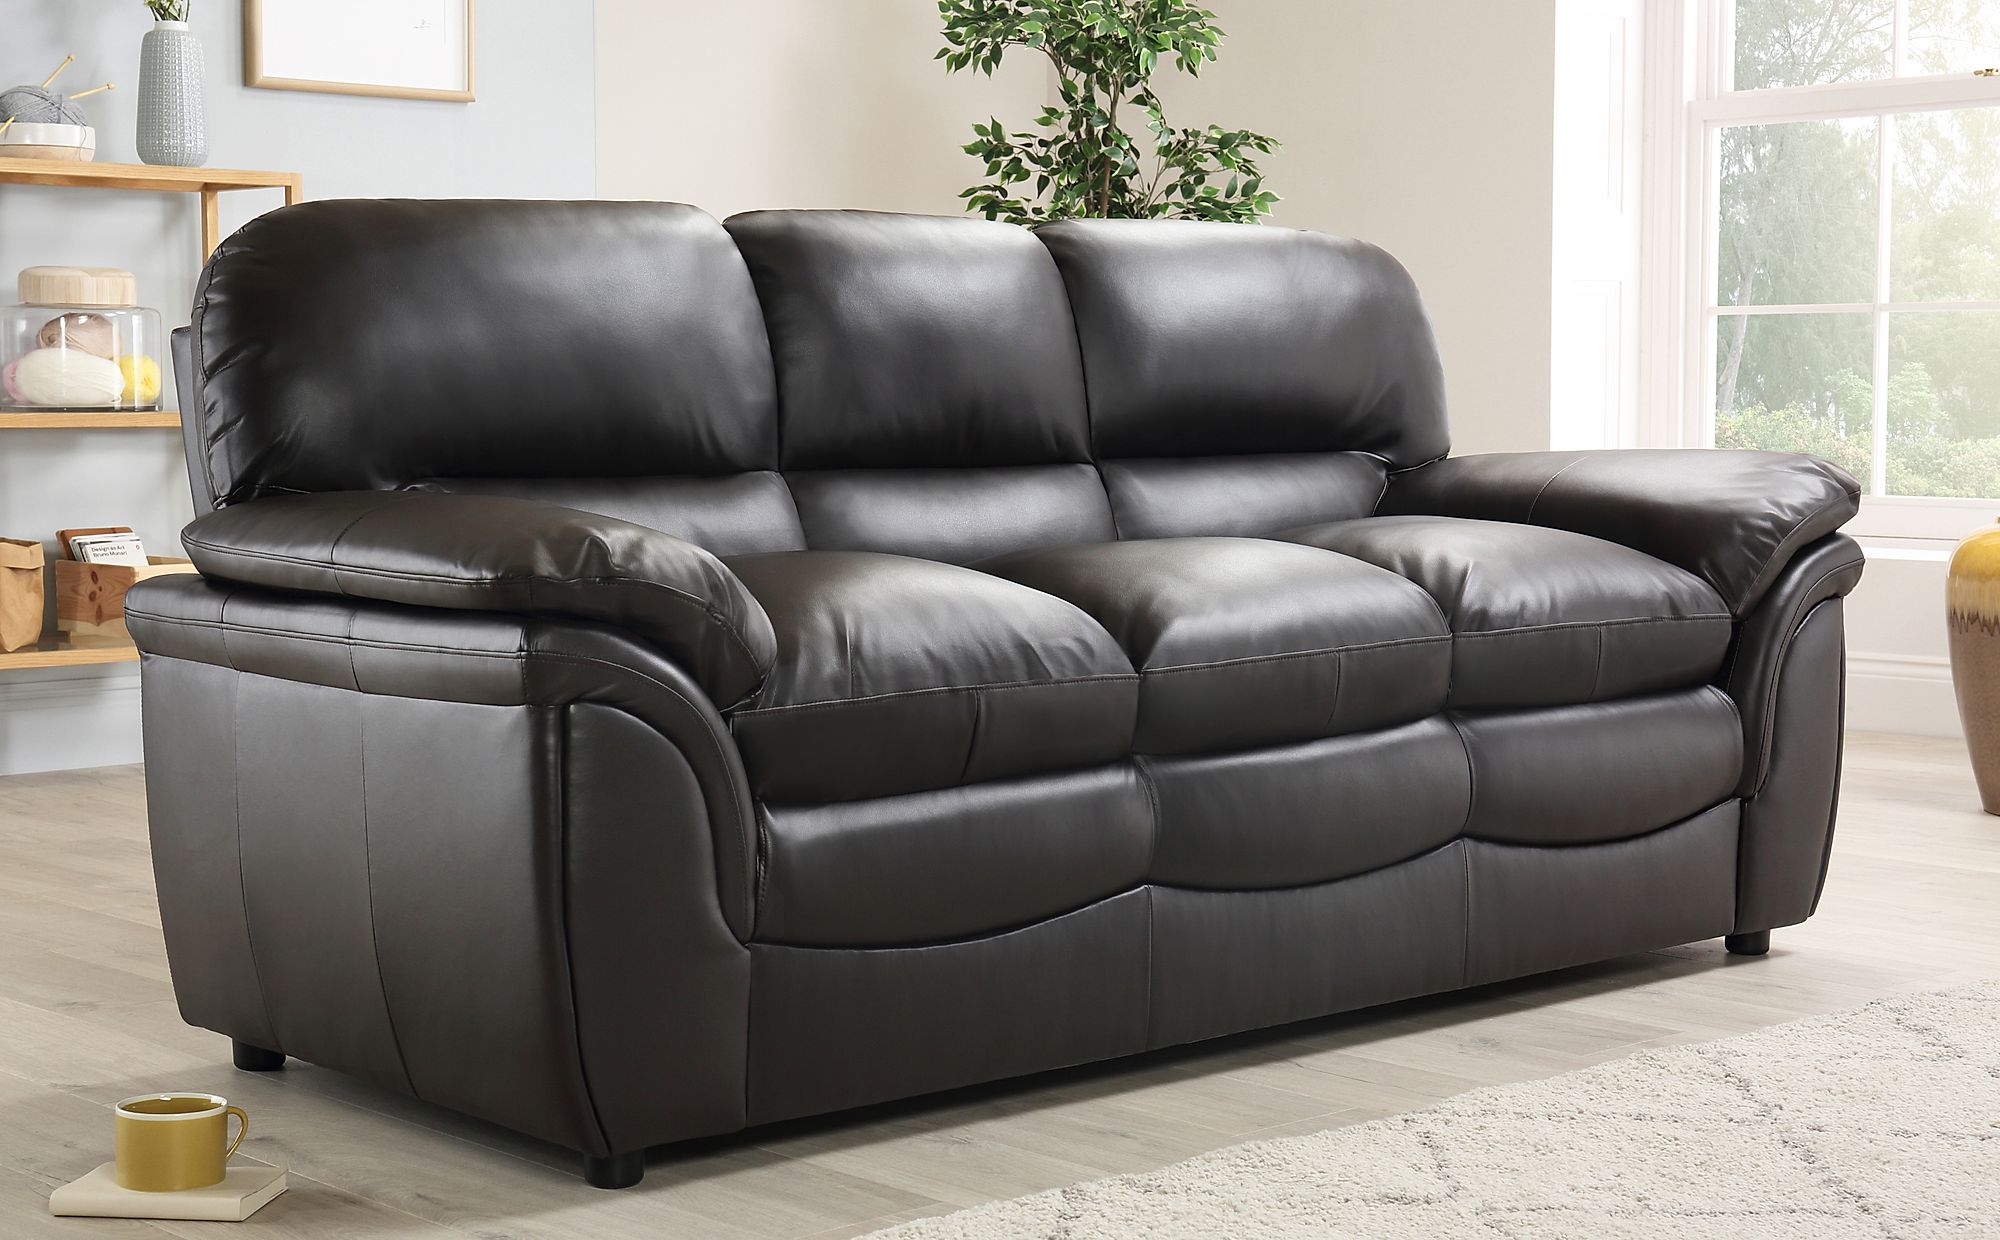 sofa set non leather sofa